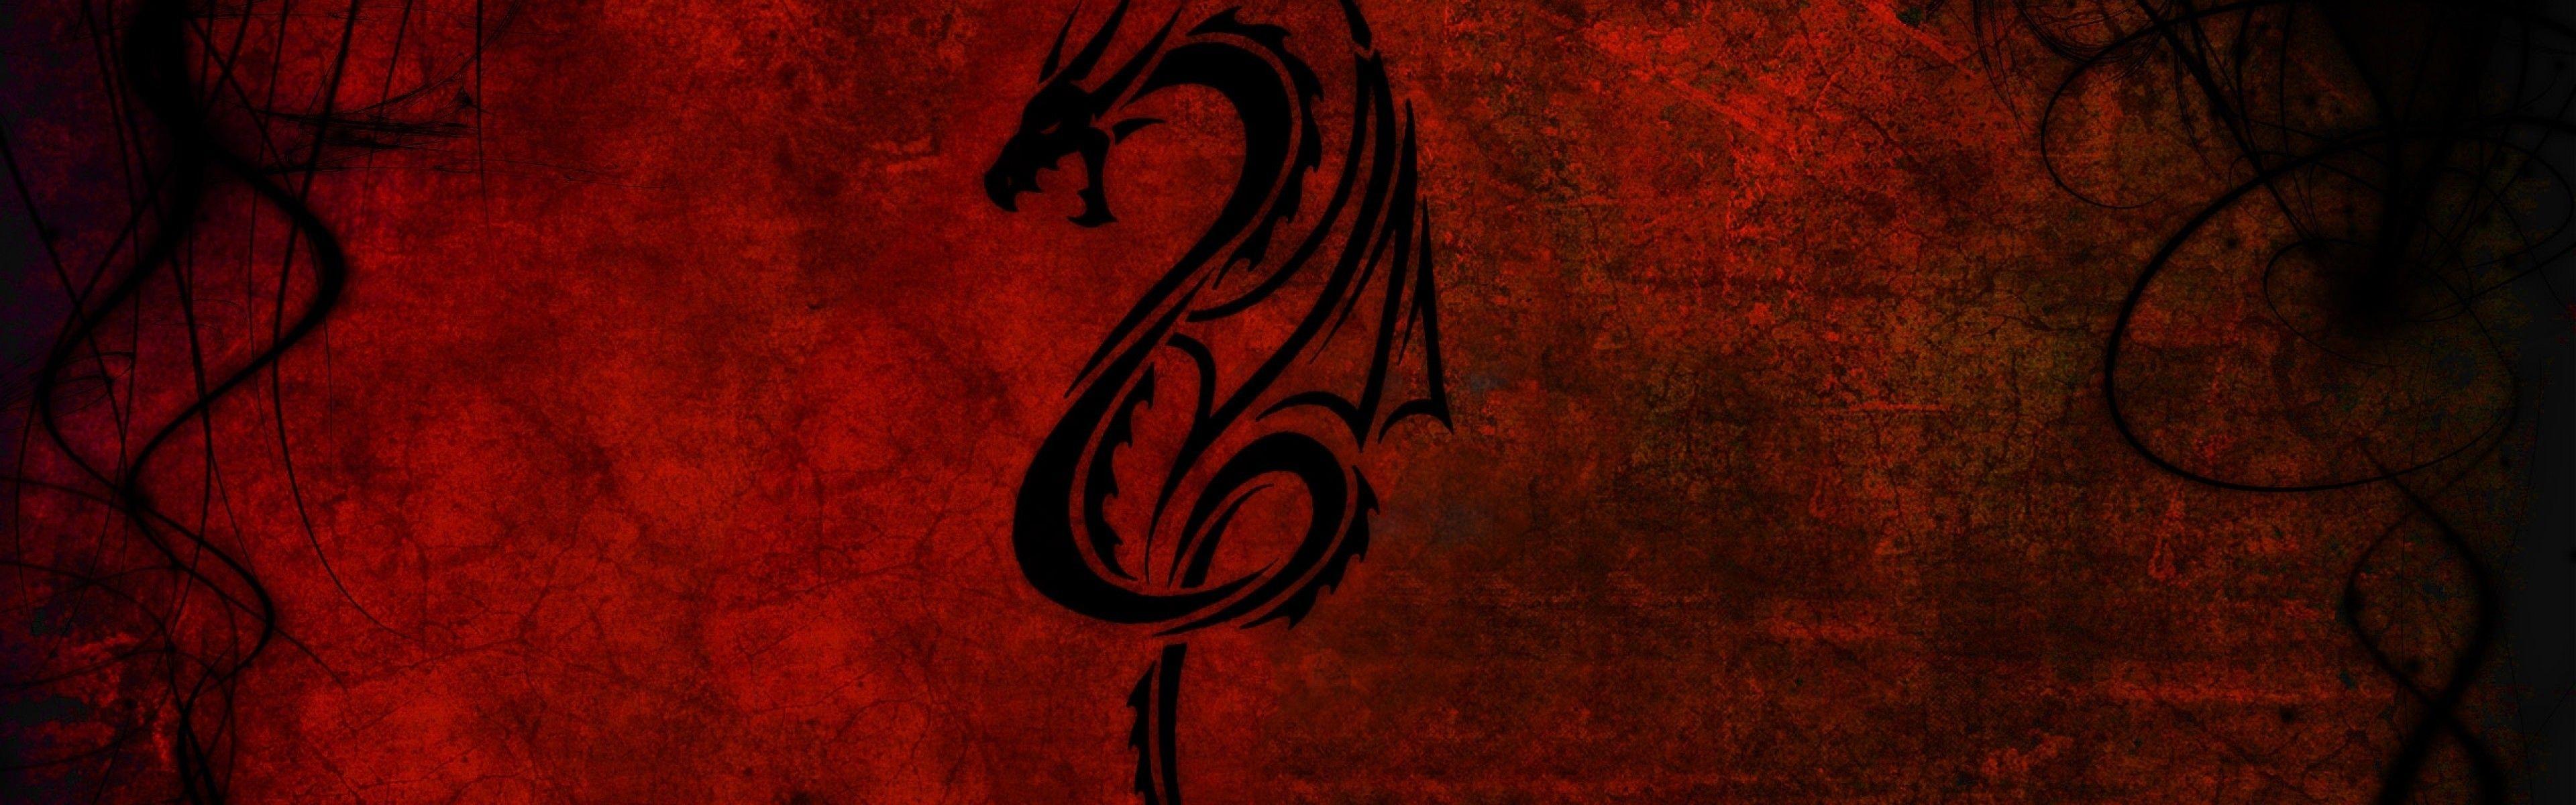 Red Eyes Black Dragon Wallpapers - Top Free Red Eyes Black Dragon